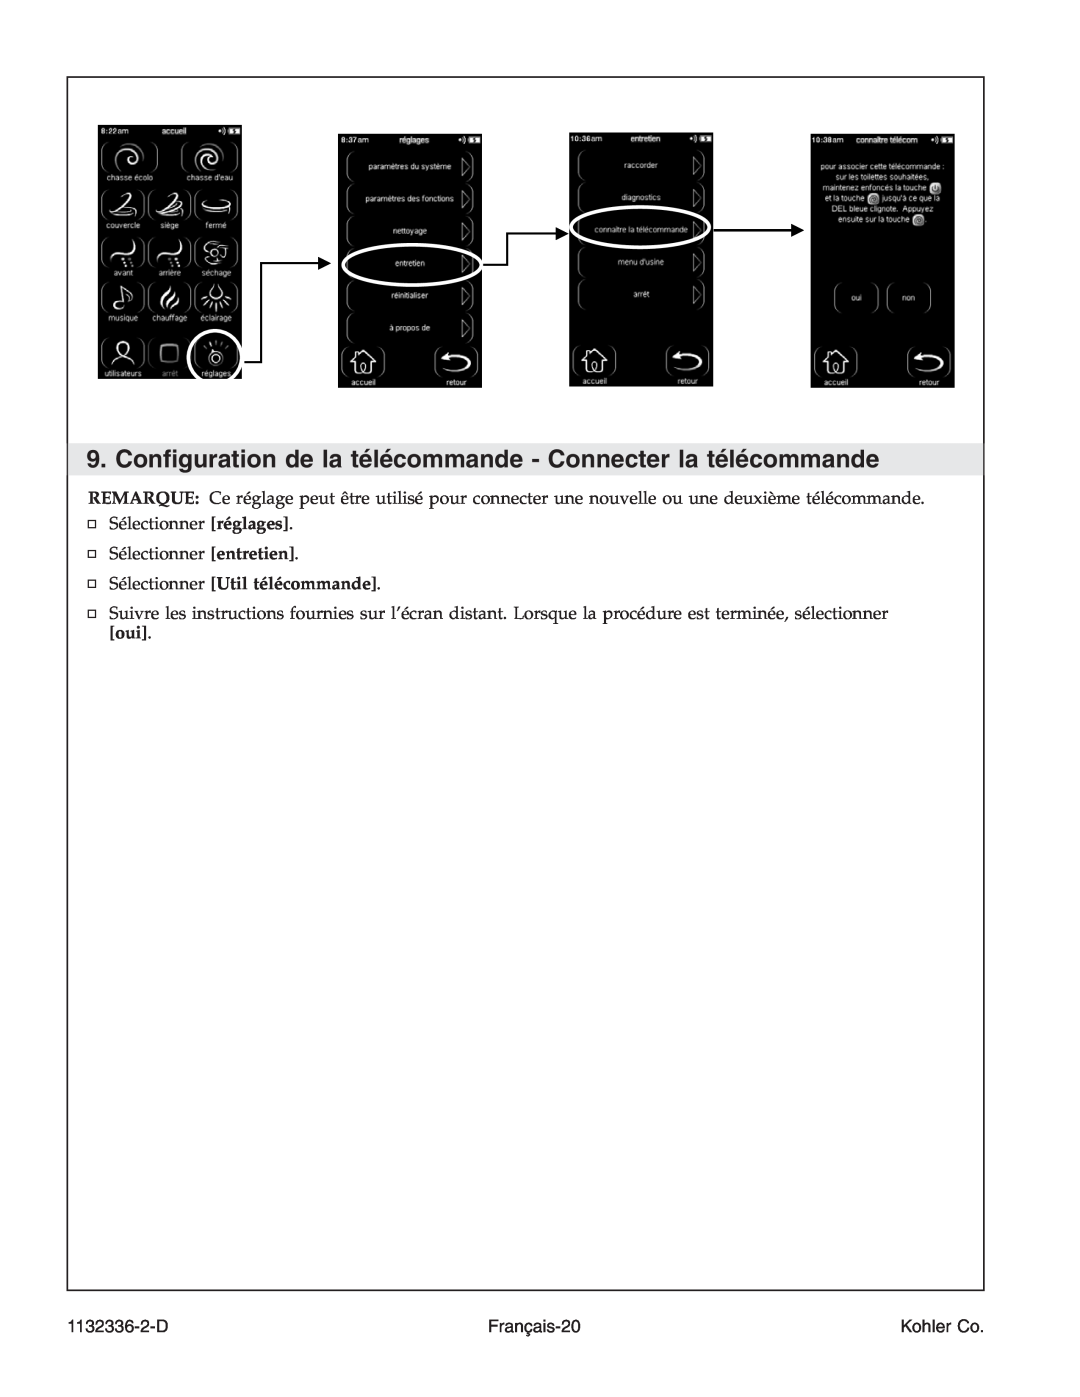 Kohler K-3900 manual Sélectionner Util télécommande, Français-20, 1132336-2-D, Kohler Co 